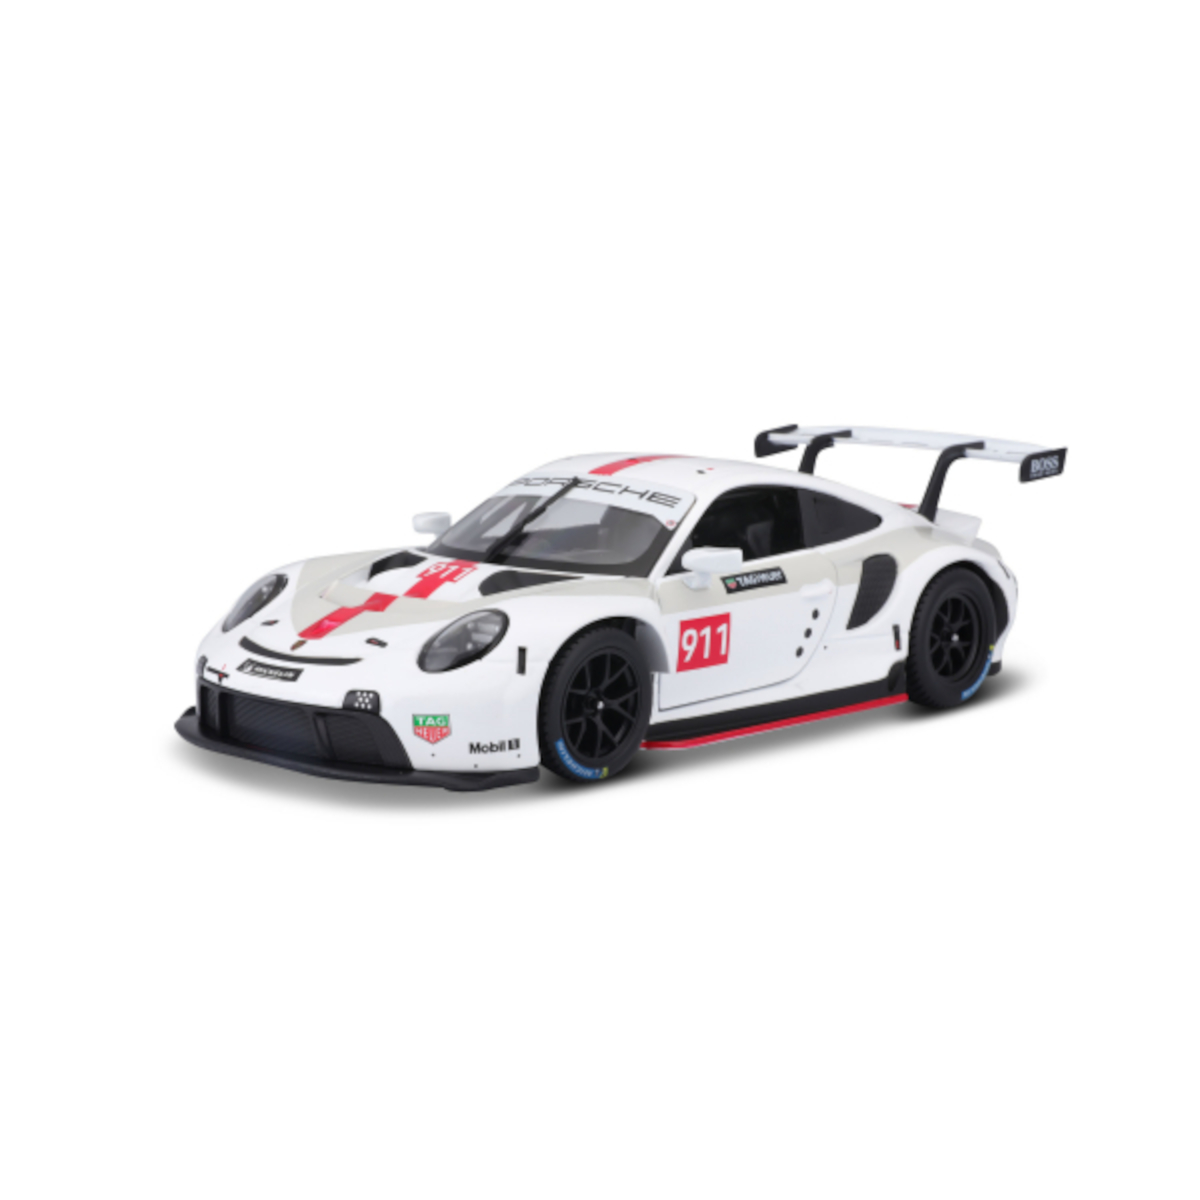 18-38302 (weiß, - BBURAGO 1:43) RSR - 911 Porsche Modellauto Spielzeugauto Maßstab